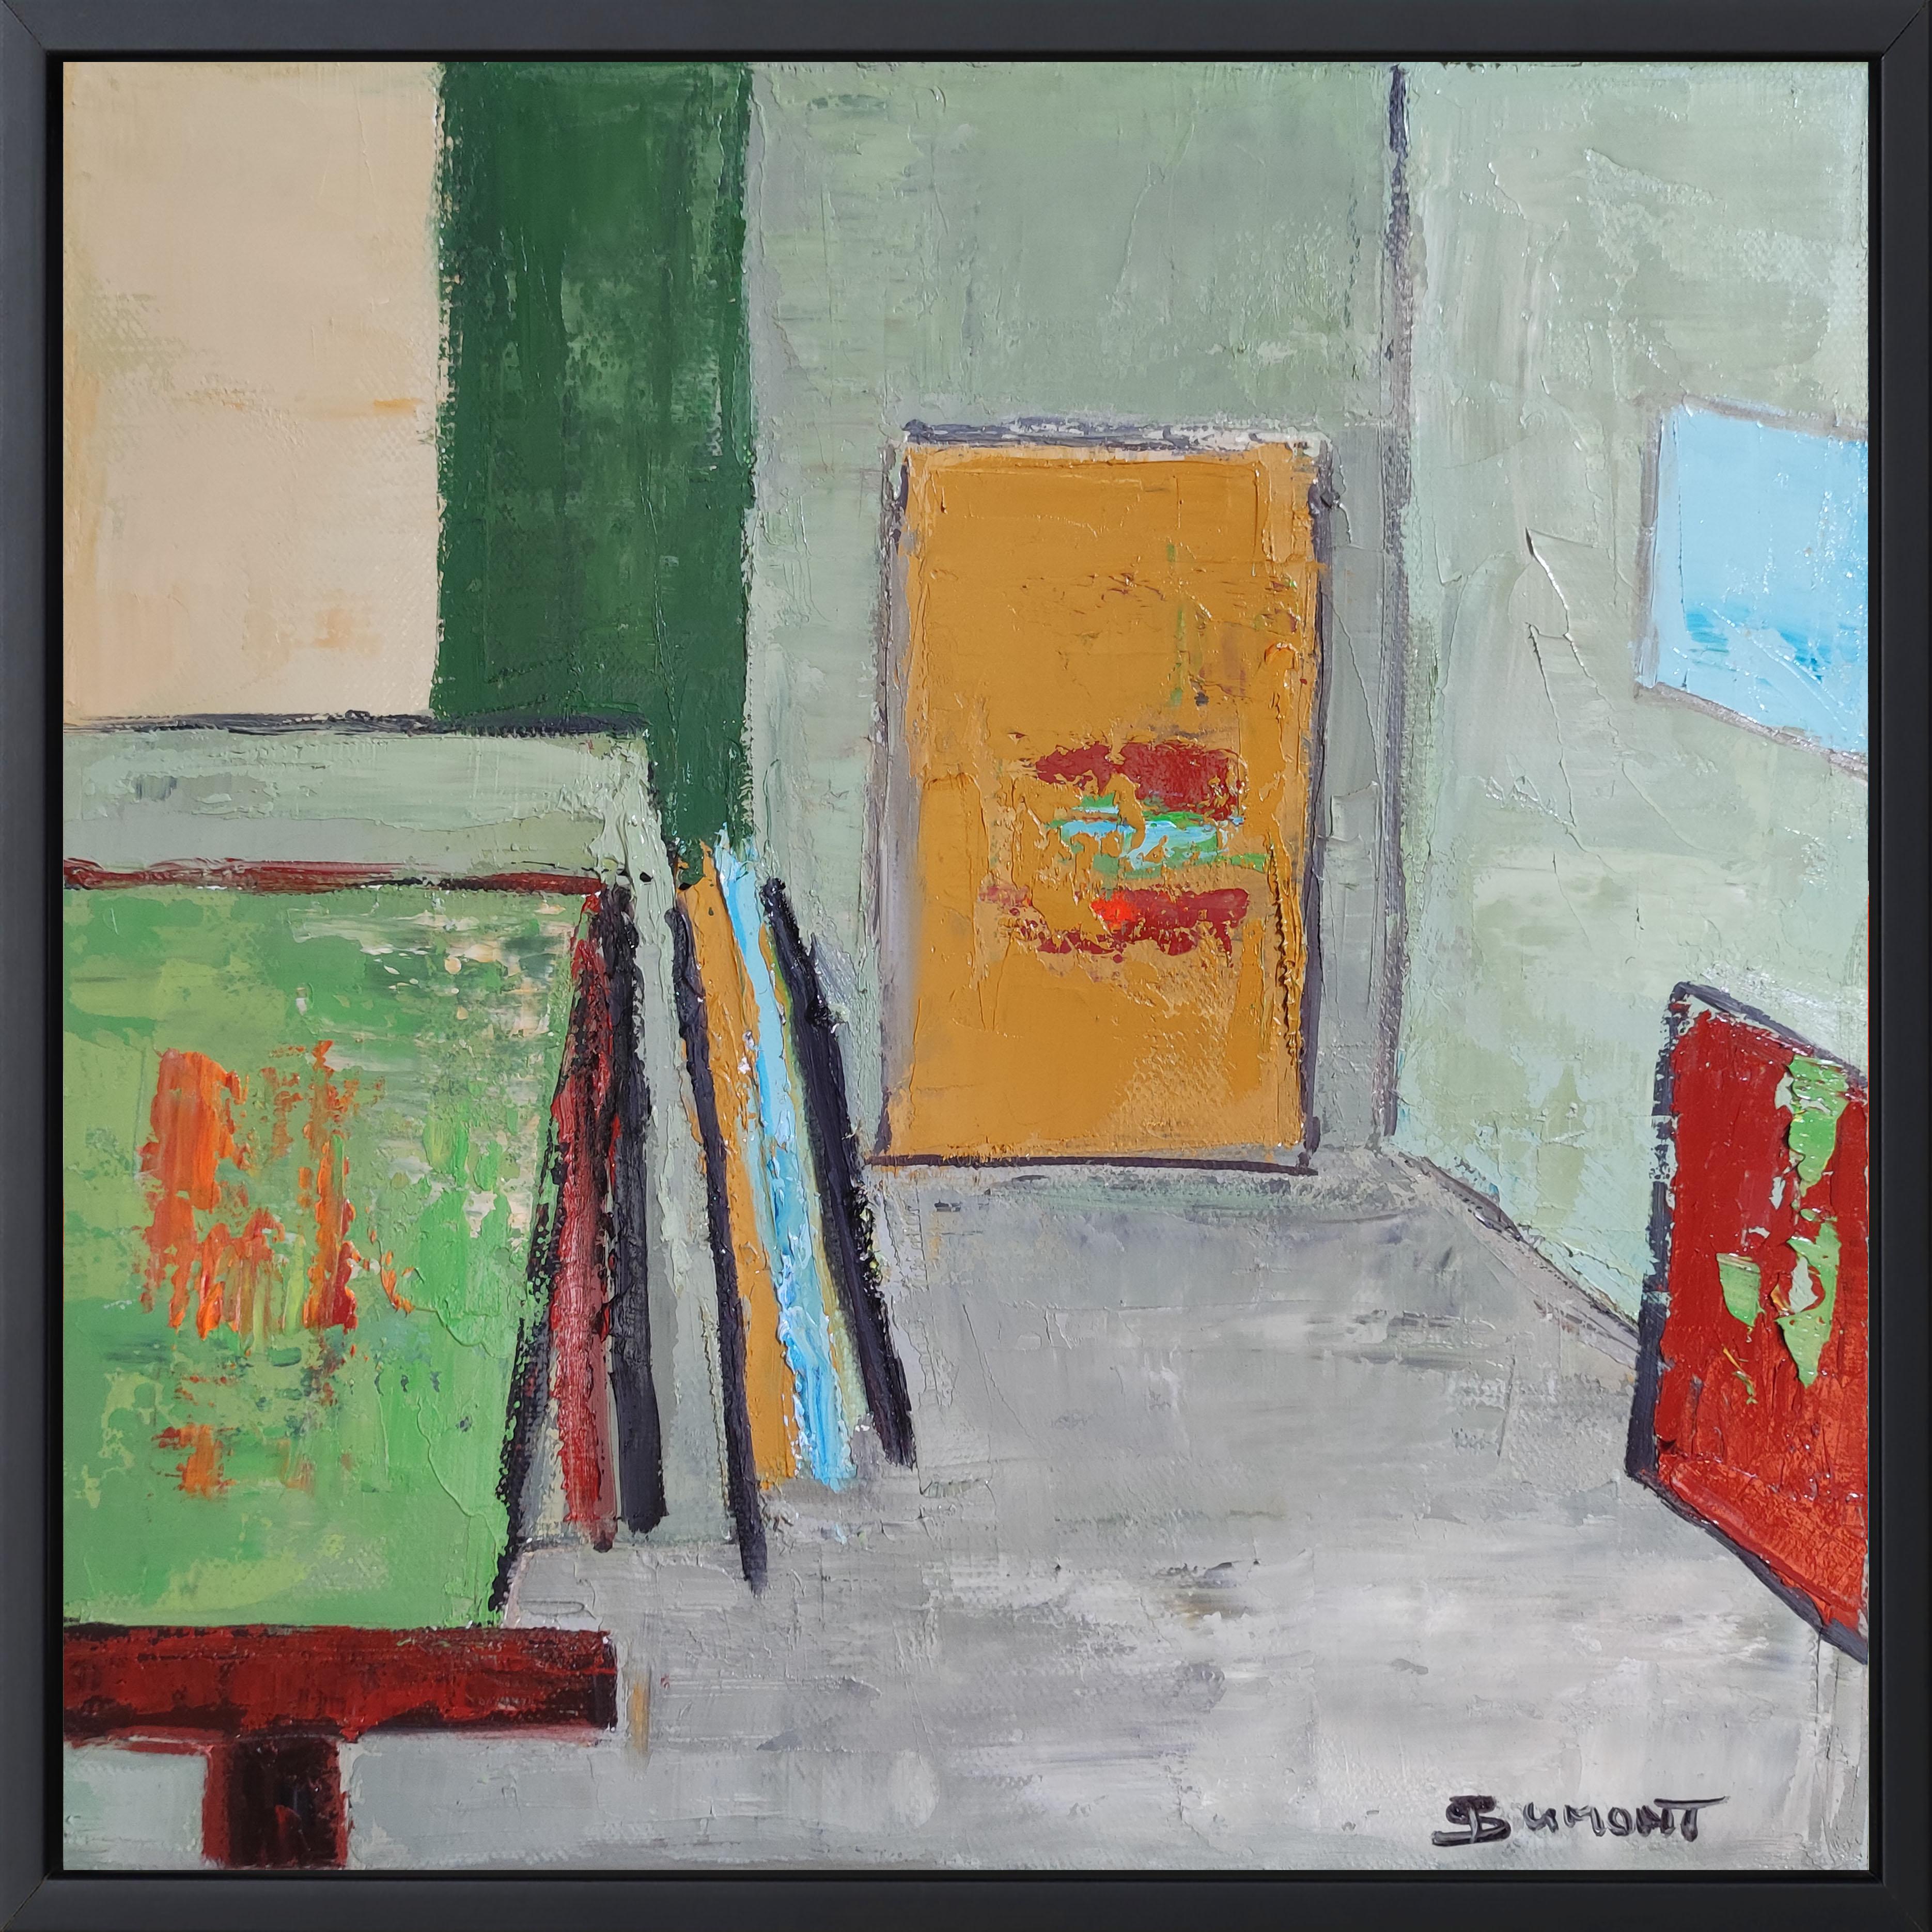 SOPHIE DUMONT Abstract Painting – Studio 19,  grün abstrakt, öl auf leinwand, zeitgenössisch, expressionismus, französisch